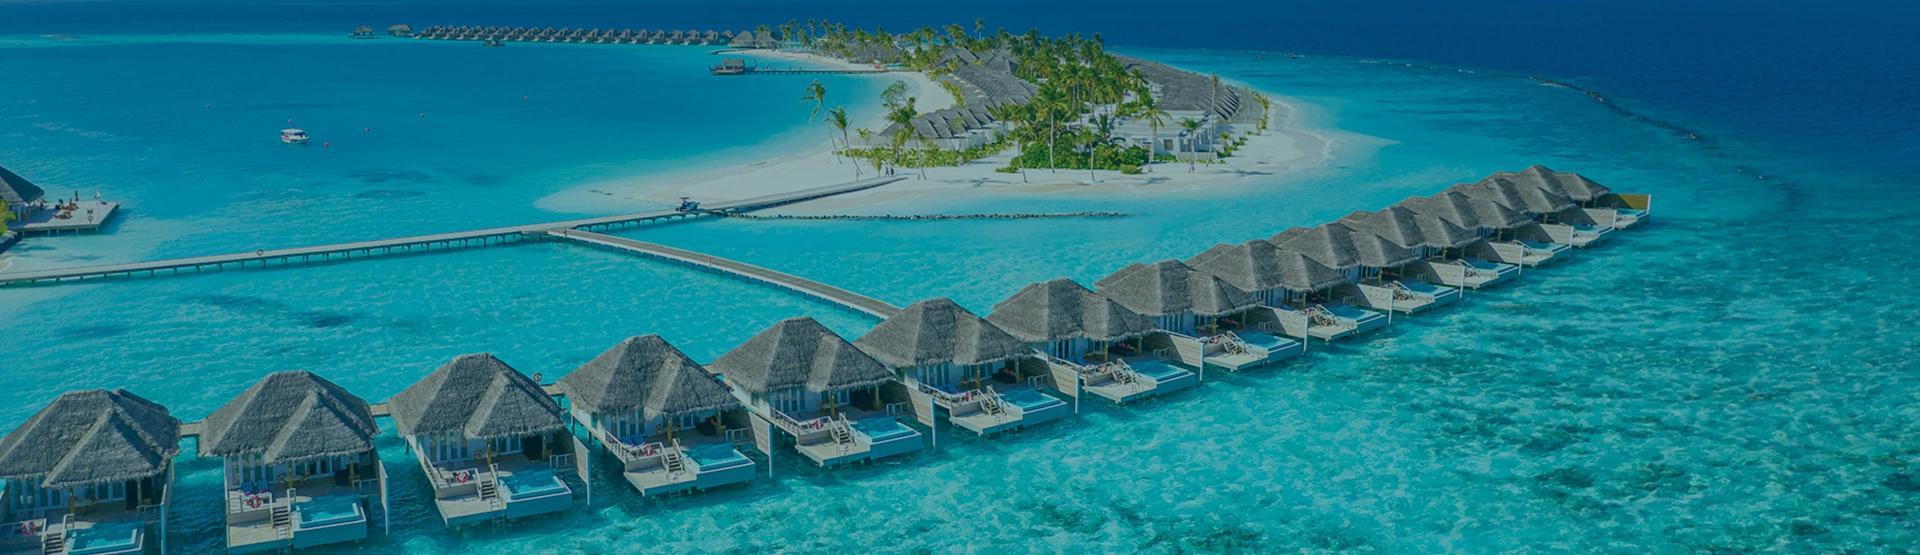 حجز رحلات طيران من راس الخيمة إلى جزر المالديف